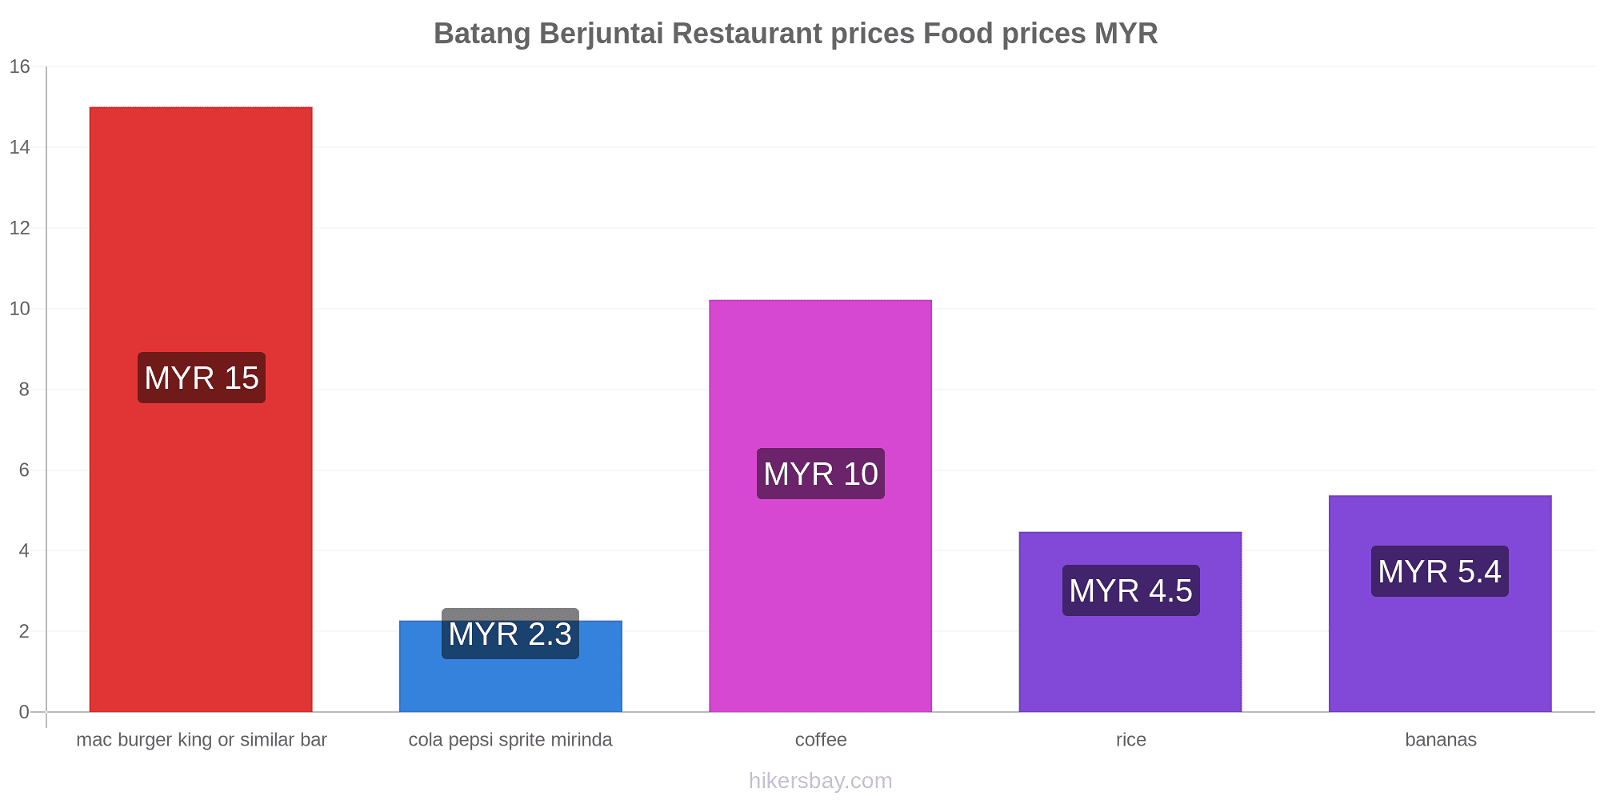 Batang Berjuntai price changes hikersbay.com